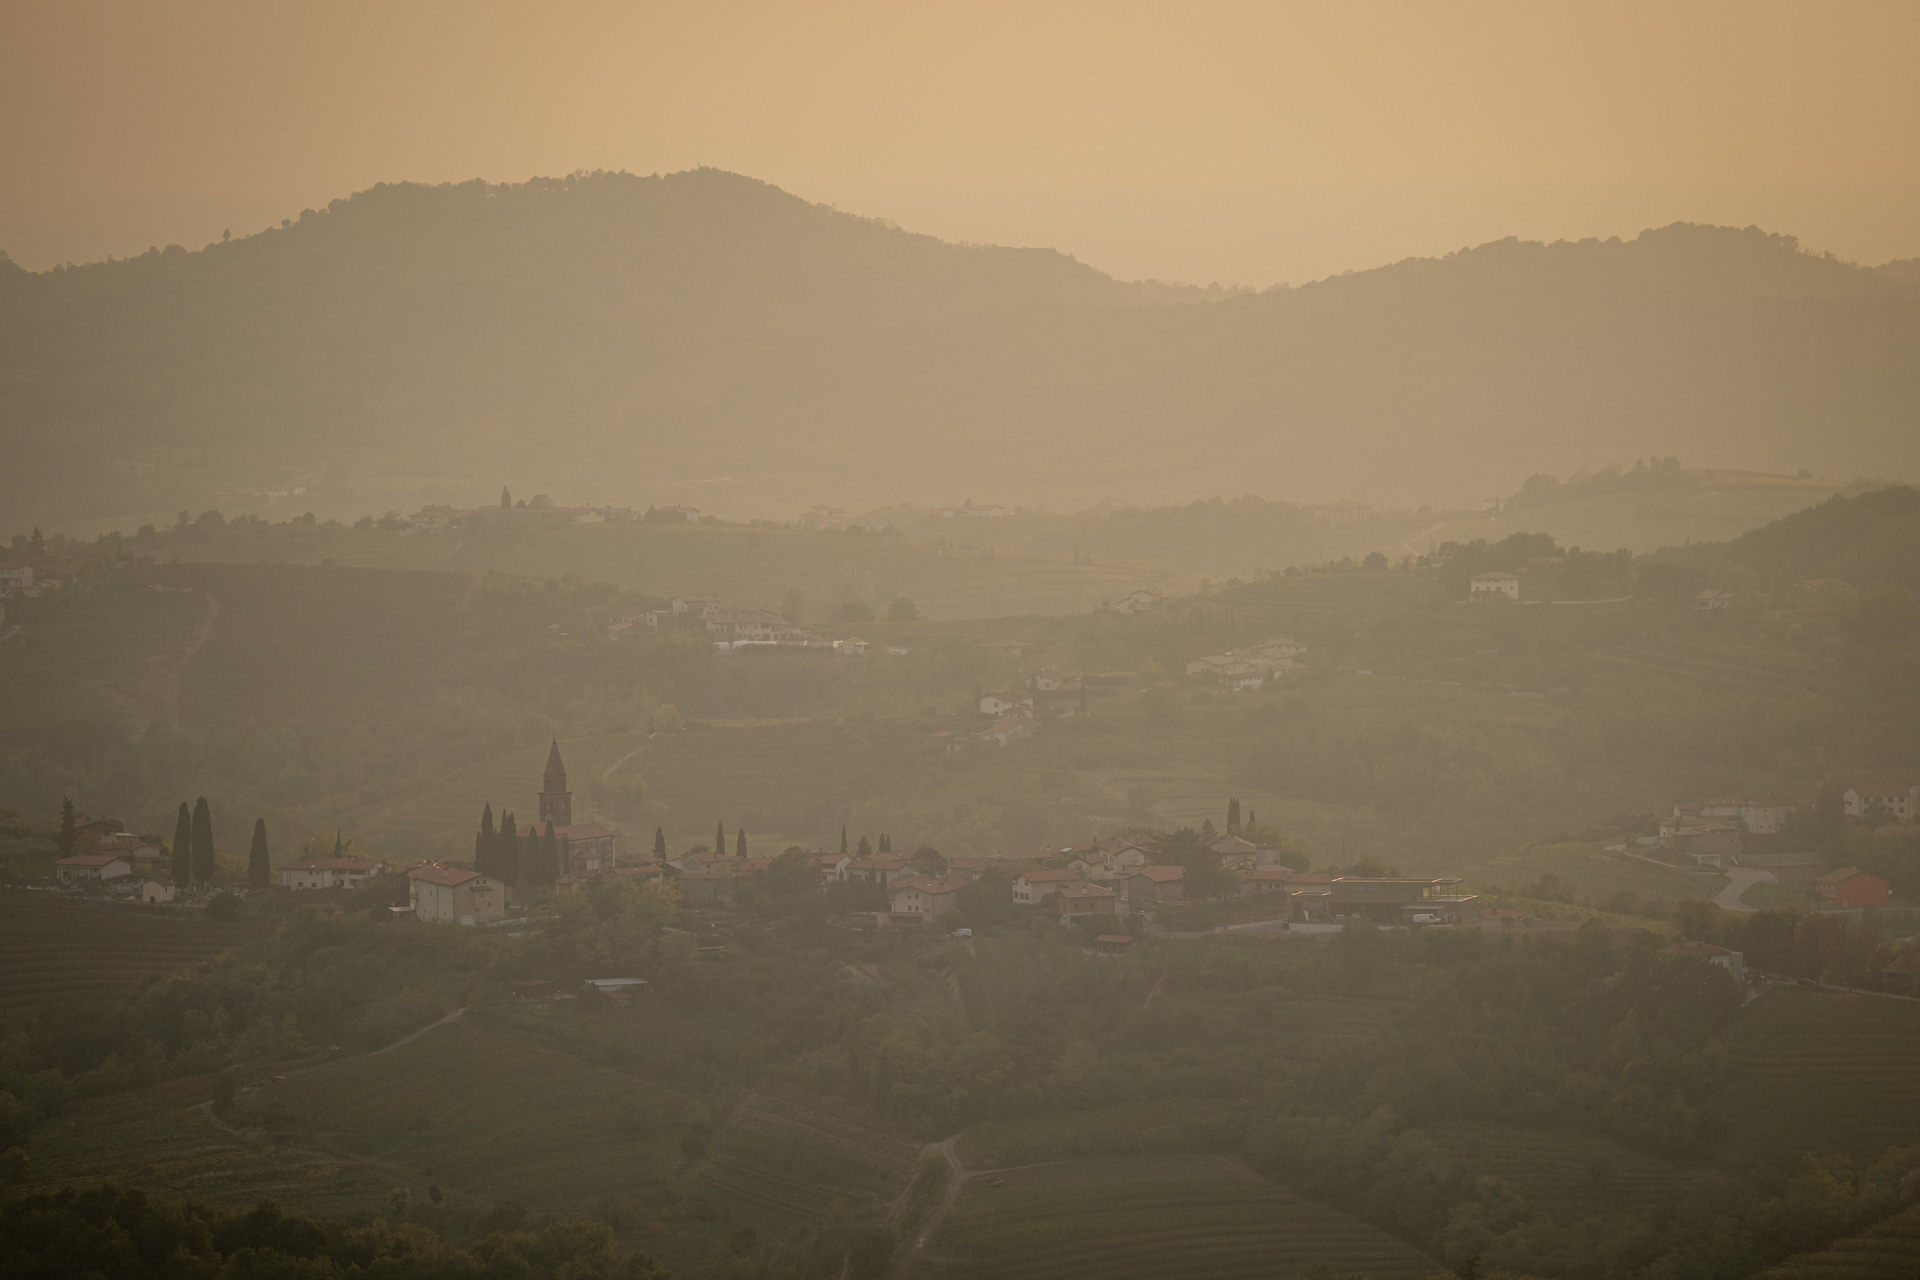 Sonnenuntergang in Sloweniens Weinregion